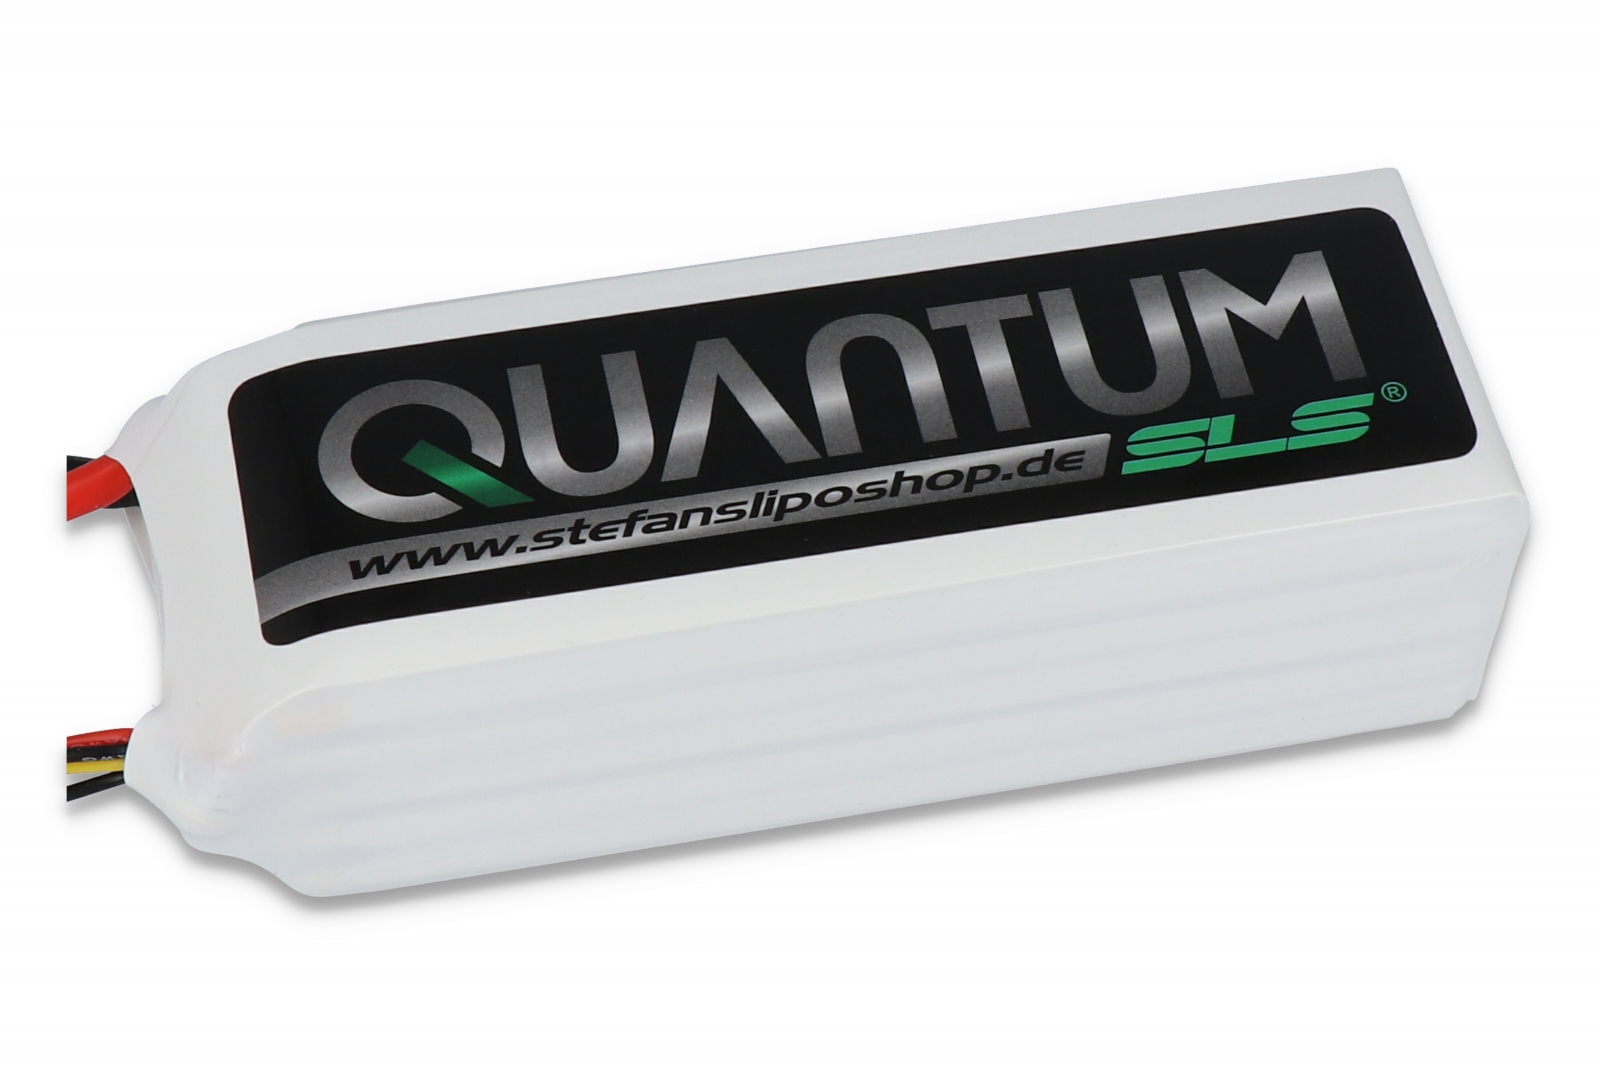 SLS Quantum 4500mAh 5S1P 18,5V 30C/60C SLSQ45005130 - Lipo Modellbau Akkus  bei Stefansliposhop online kaufen